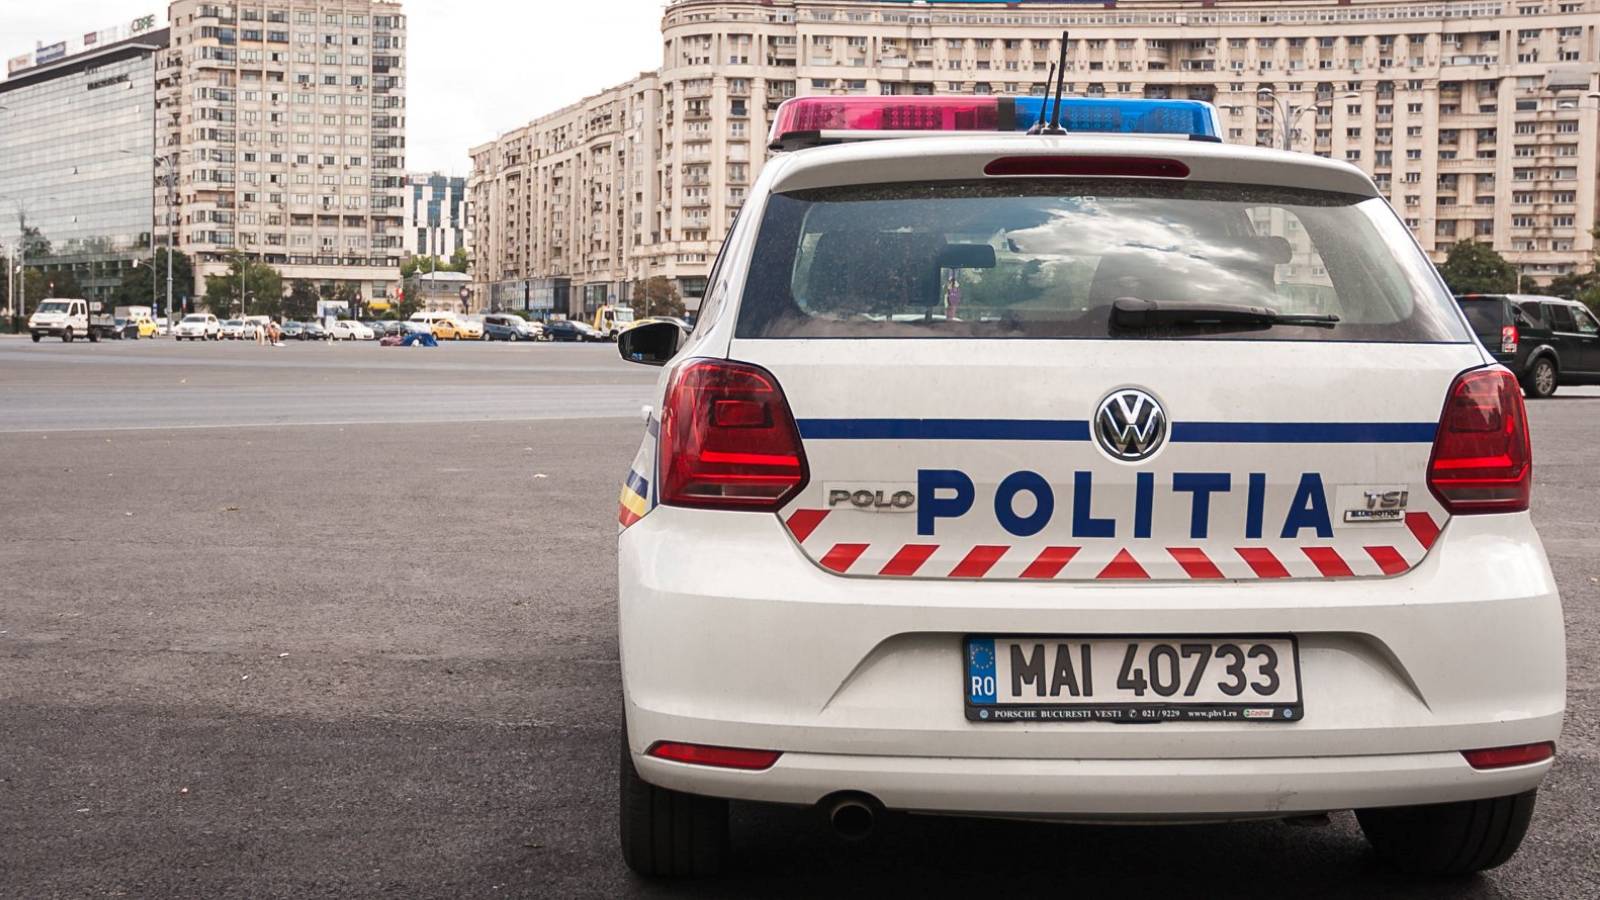 La police roumaine met en garde contre les faux policiers